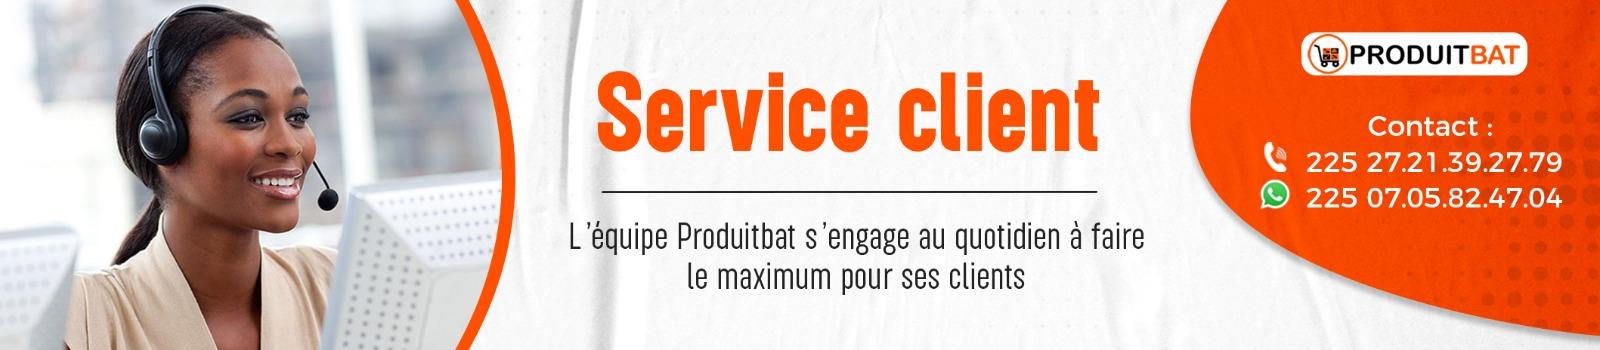 service client 2